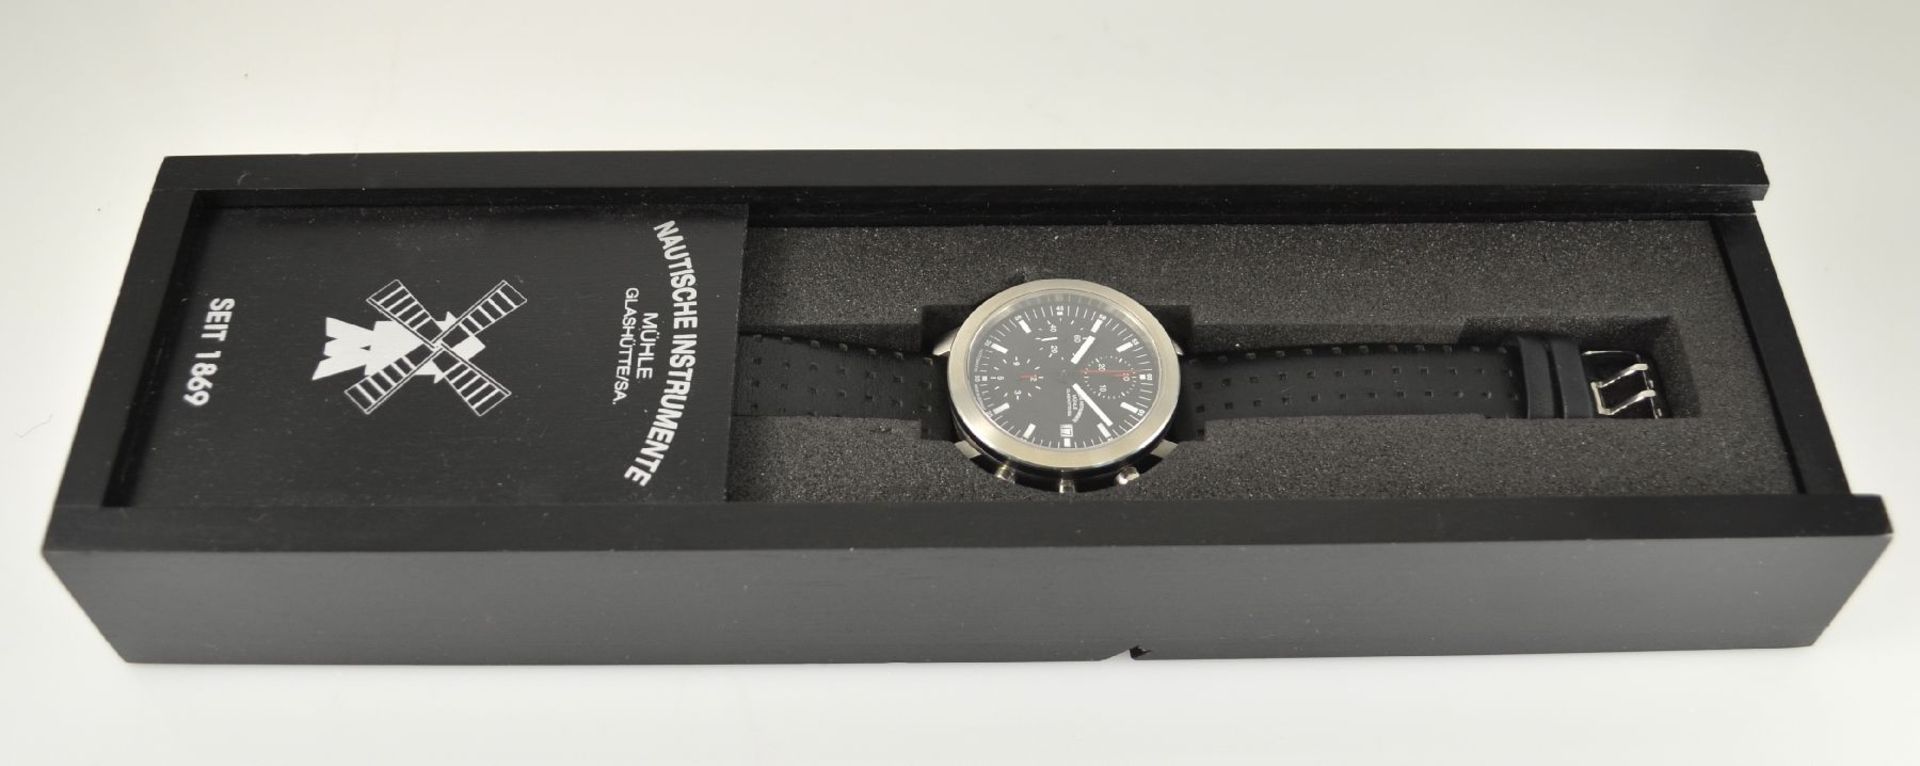 MÜHLE GLASHÜTTE Armbandchronograph in Stahl, Deutschland/Schweiz um 2005, Automatik, beids. vergl. - Bild 8 aus 9